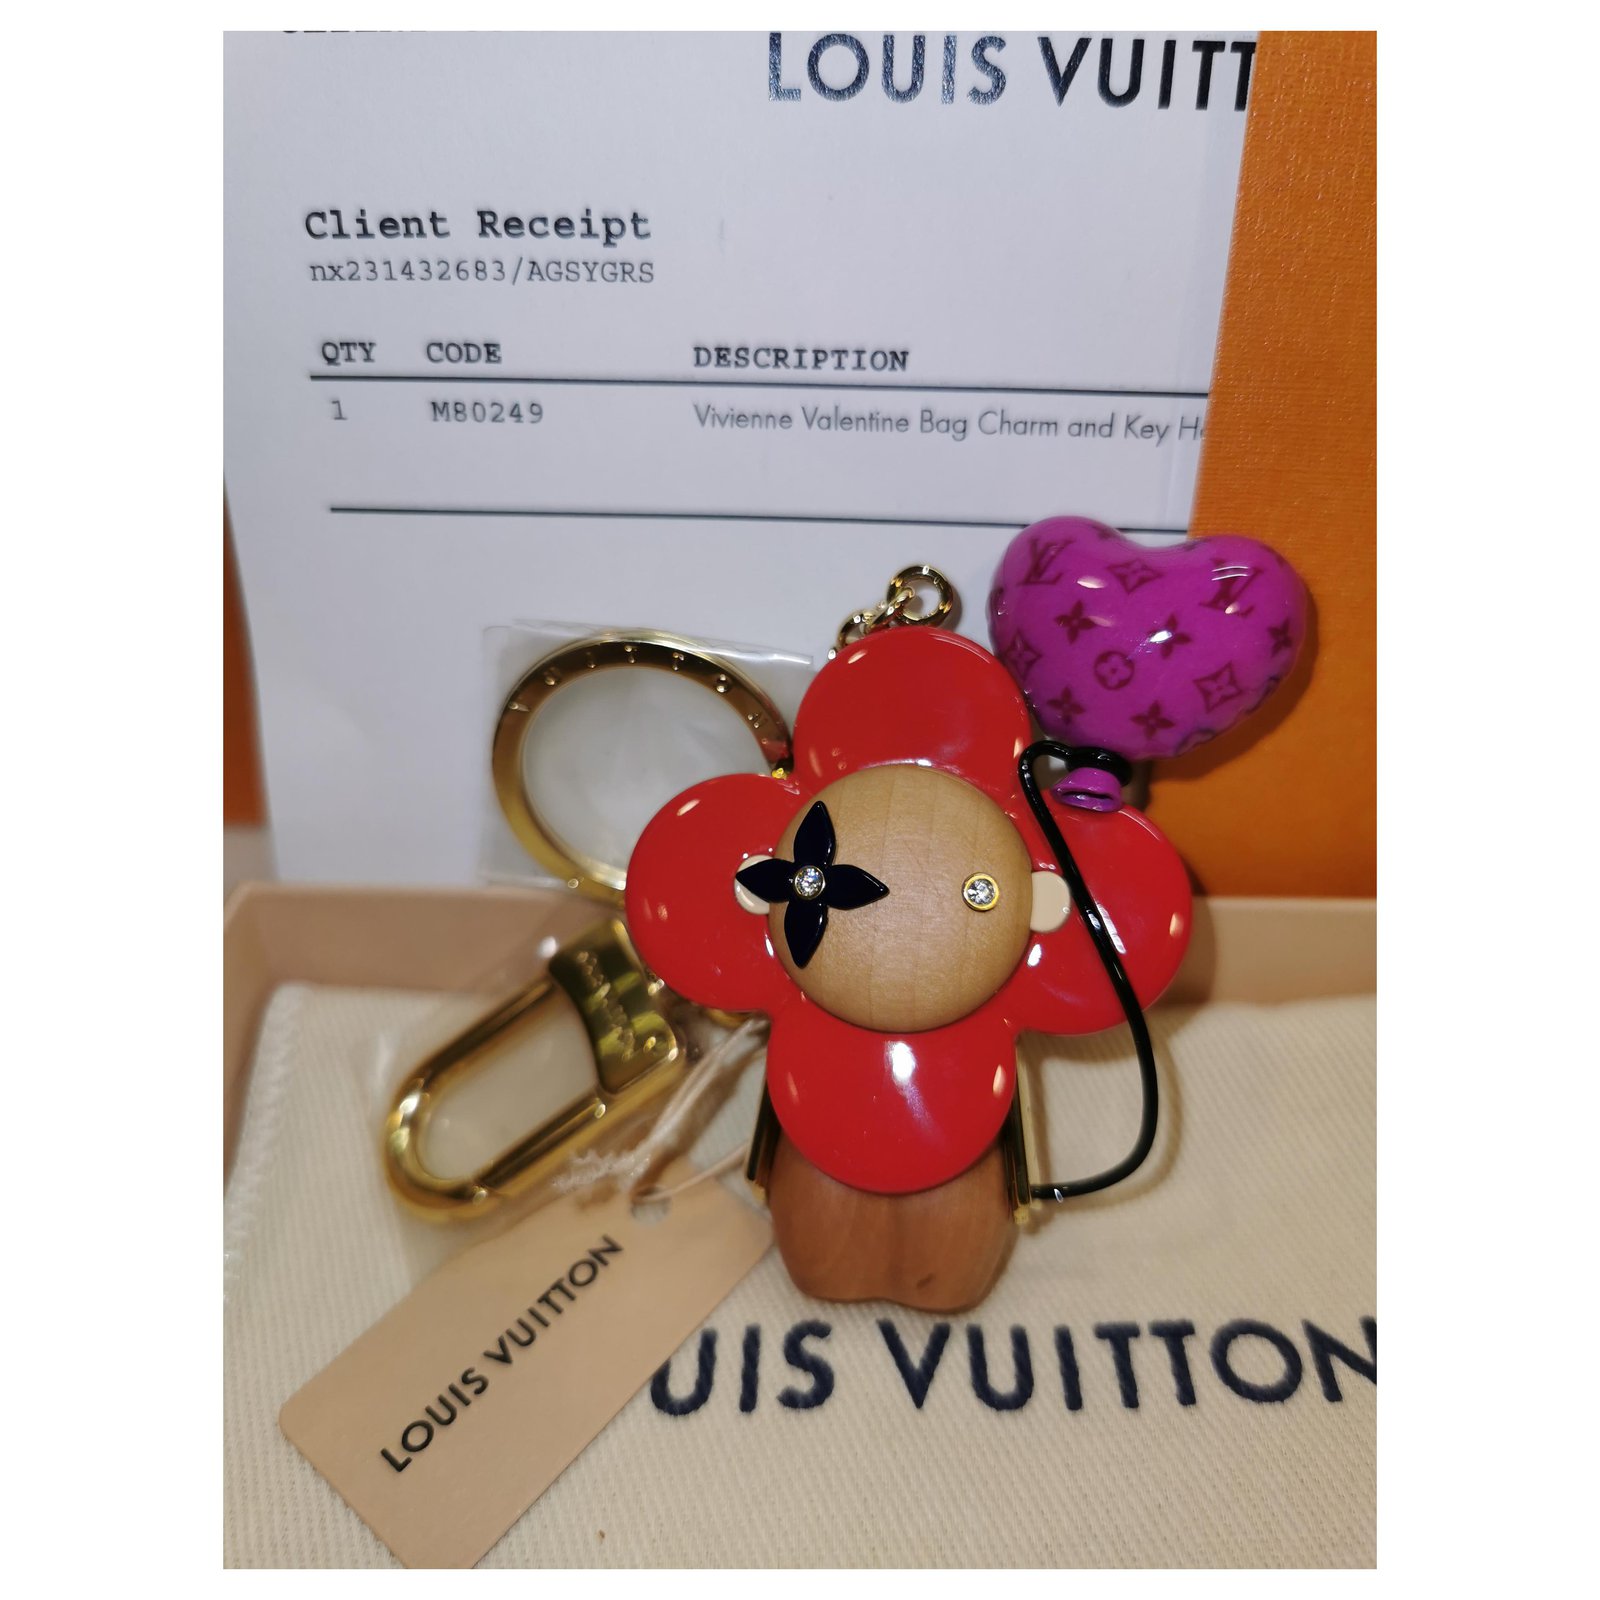 Louis Vuitton Vivienne Doudoune Bag Charm and Key Holder Limited